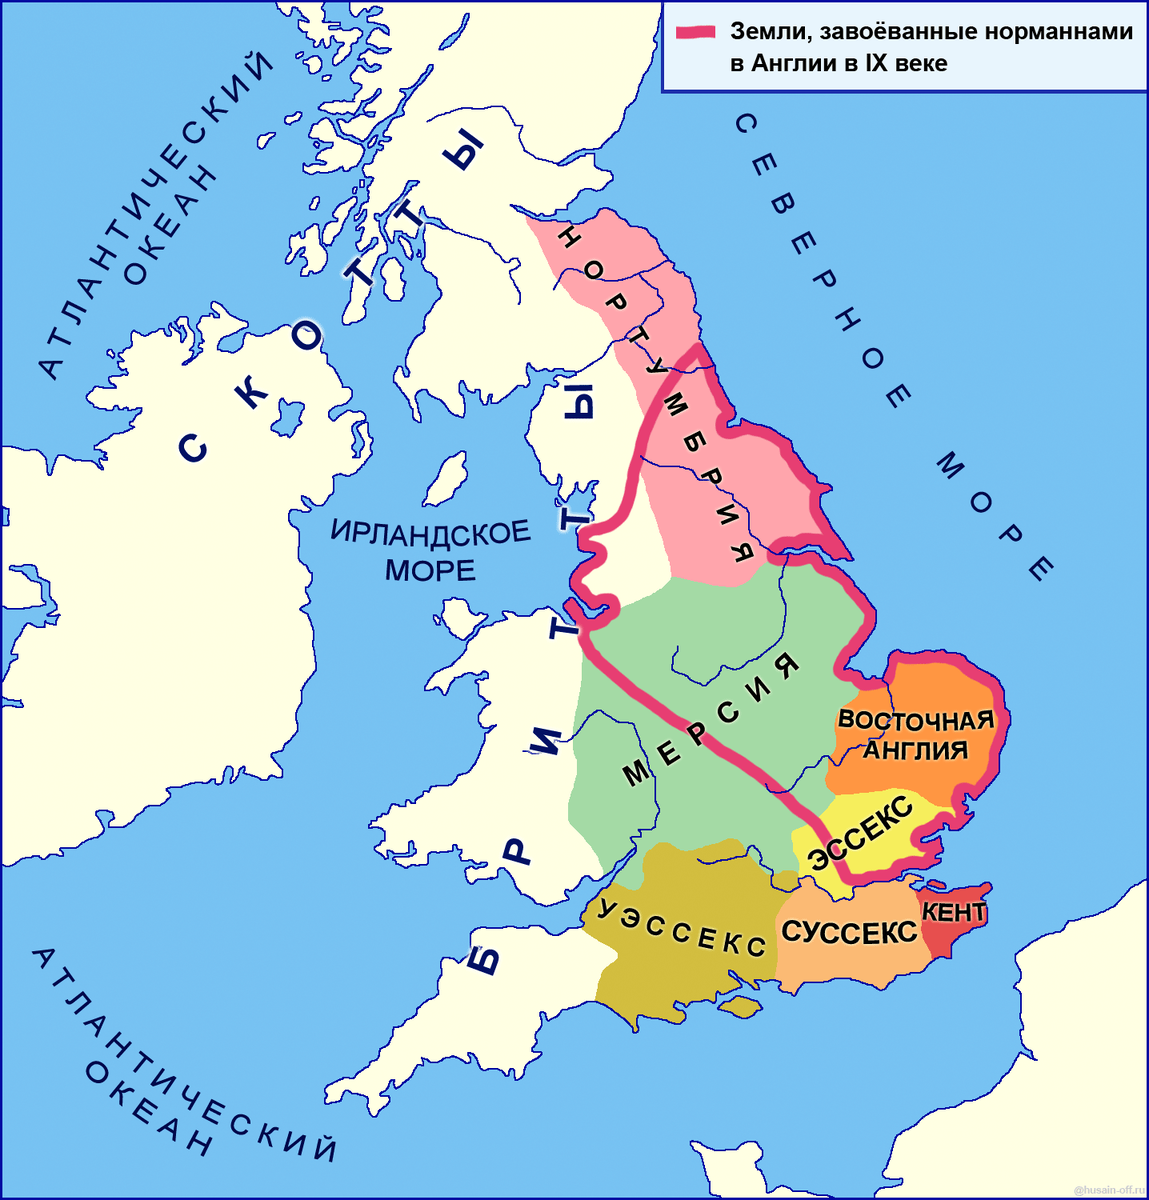 Тесты история англии. Англия в раннее средневековье карта. Англосаксонские королевства в Британии. Англосаксонские королевства в Британии карта. Англо-Саксонские королевства в Англии карта.